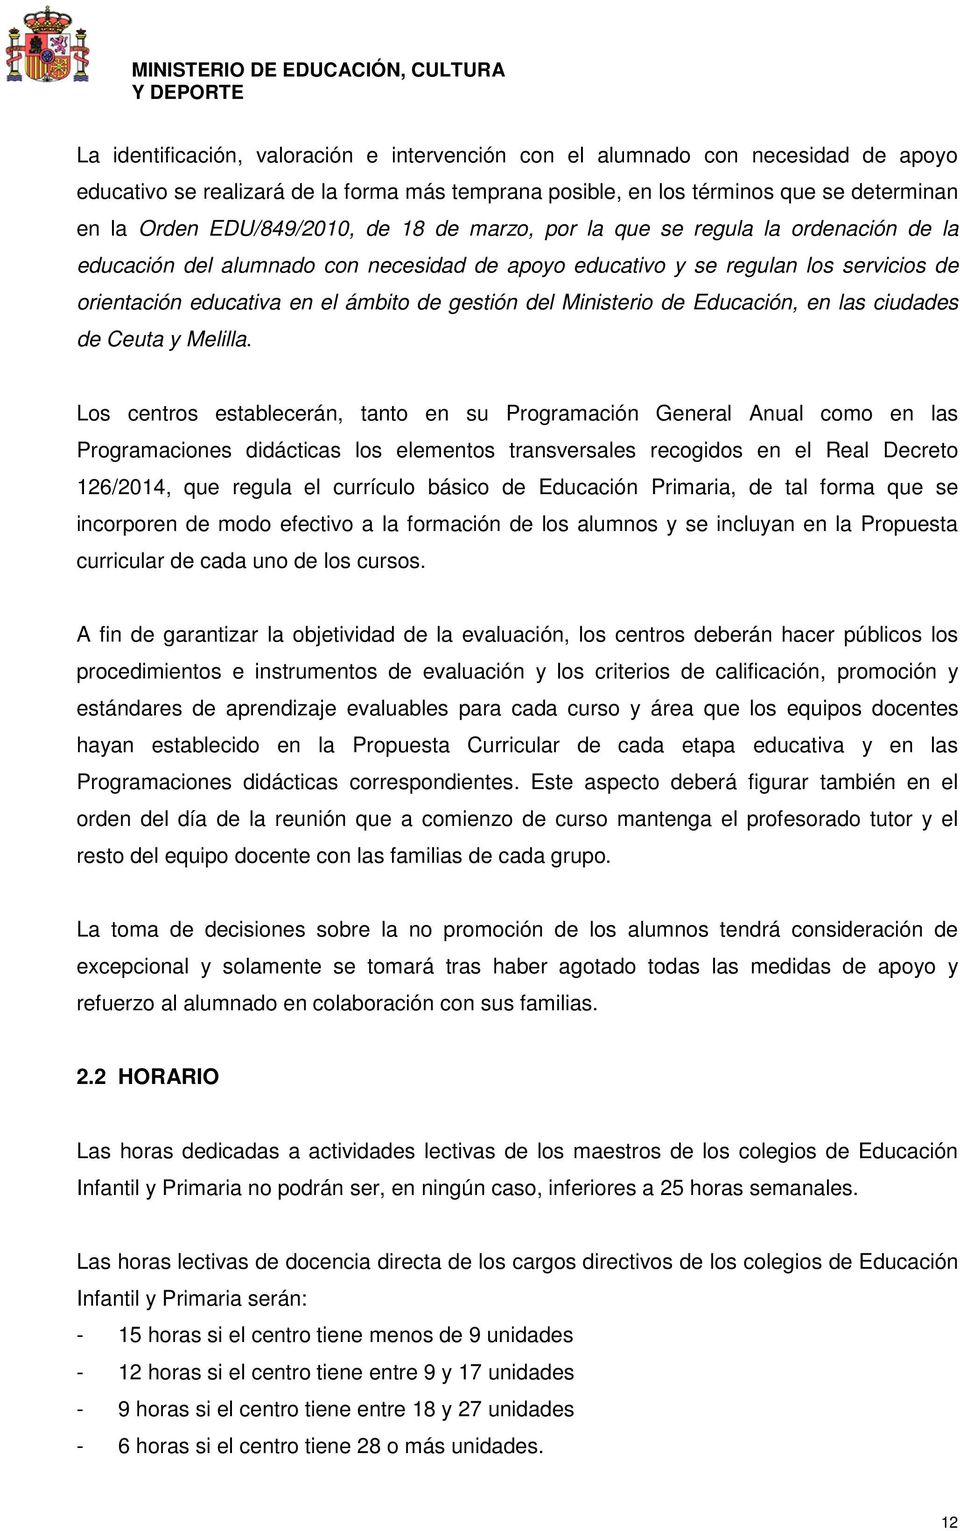 gestión del Ministerio de Educación, en las ciudades de Ceuta y Melilla.